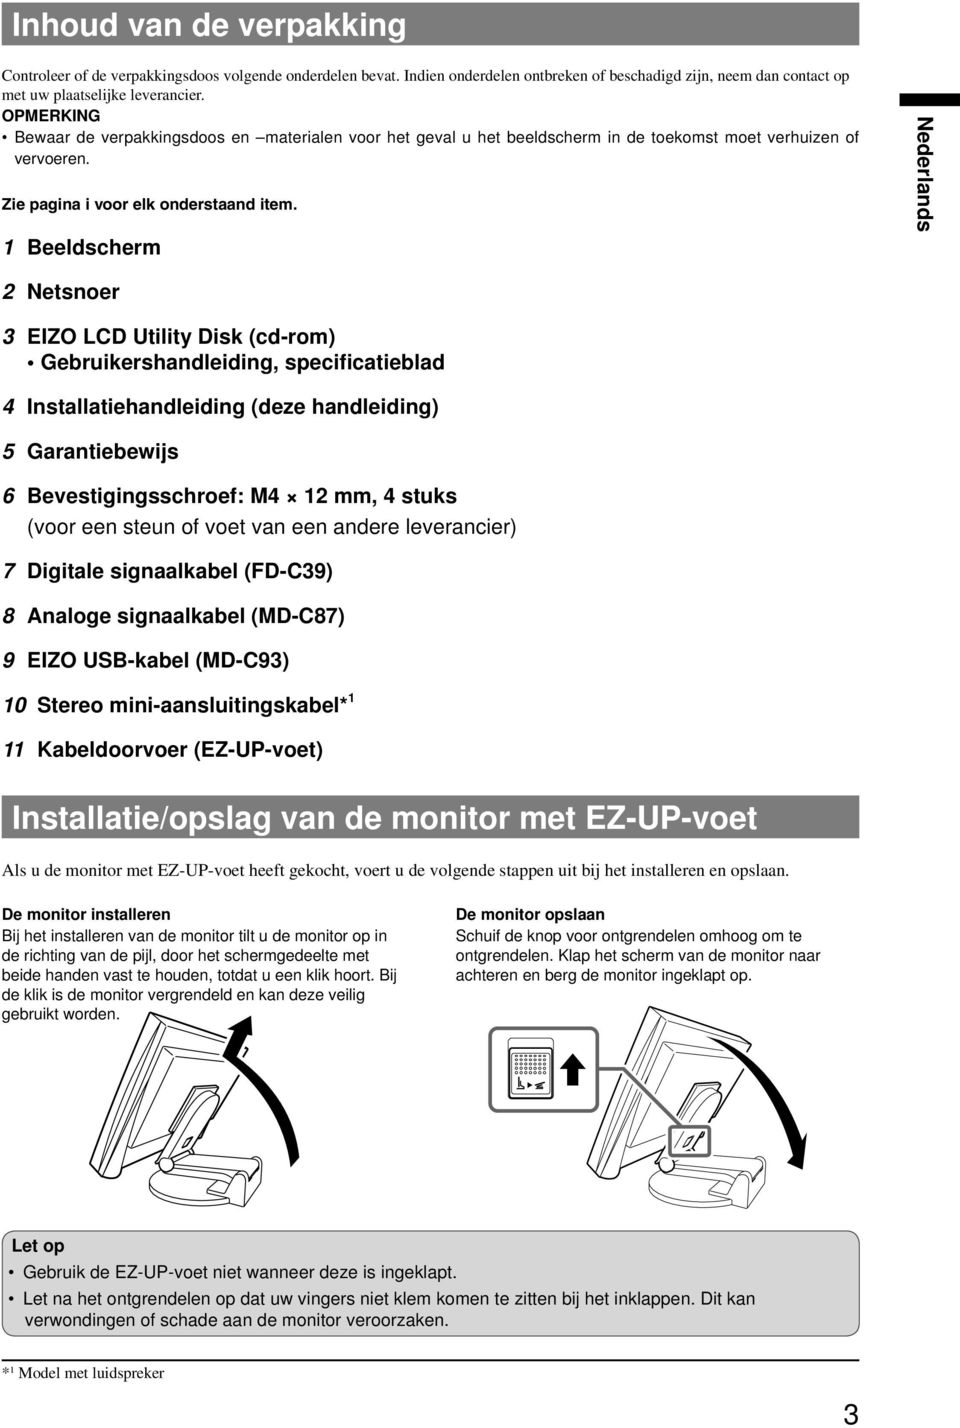 Beeldscherm Netsnoer 3 EIZO LCD Utility Disk (cd-rom) Gebruikershandleiding, specificatieblad 4 handleiding (deze handleiding) 5 Garantiebewijs 6 Bevestigingsschroef: M4 mm, 4 stuks (voor een steun